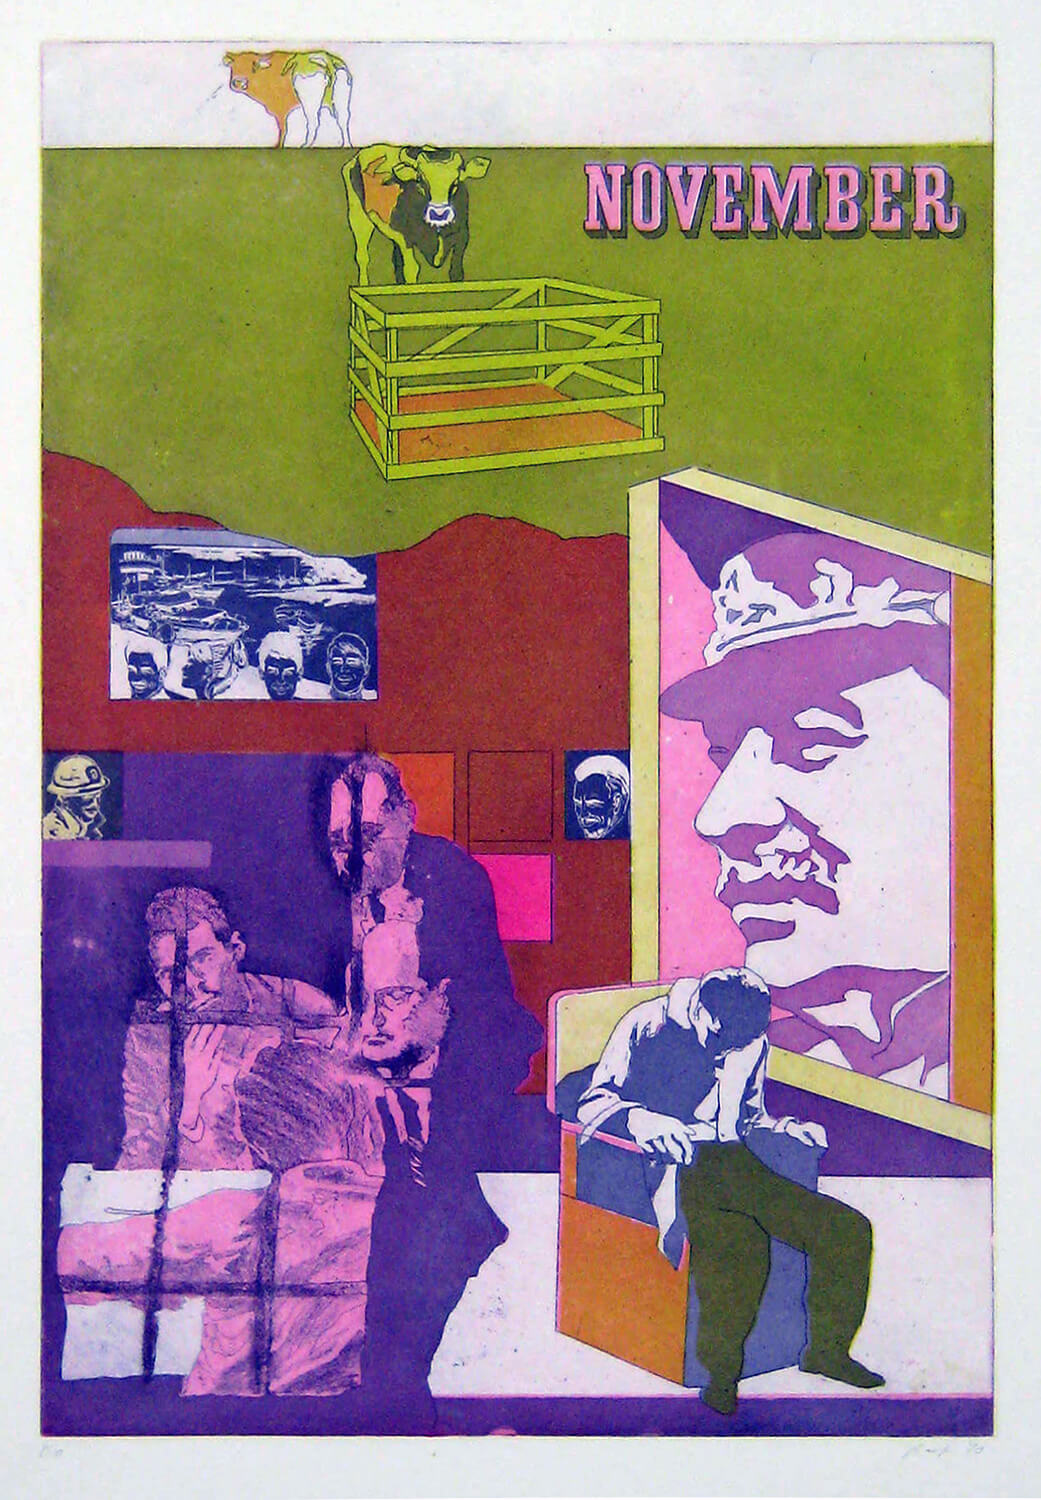 Ulrich Baehr, Ein Jahr aus dem Leben Stalins, November, 1970, Farbradierung, Auflage: 10, 76 x 54 cm, Mappe mit 6 Motiven